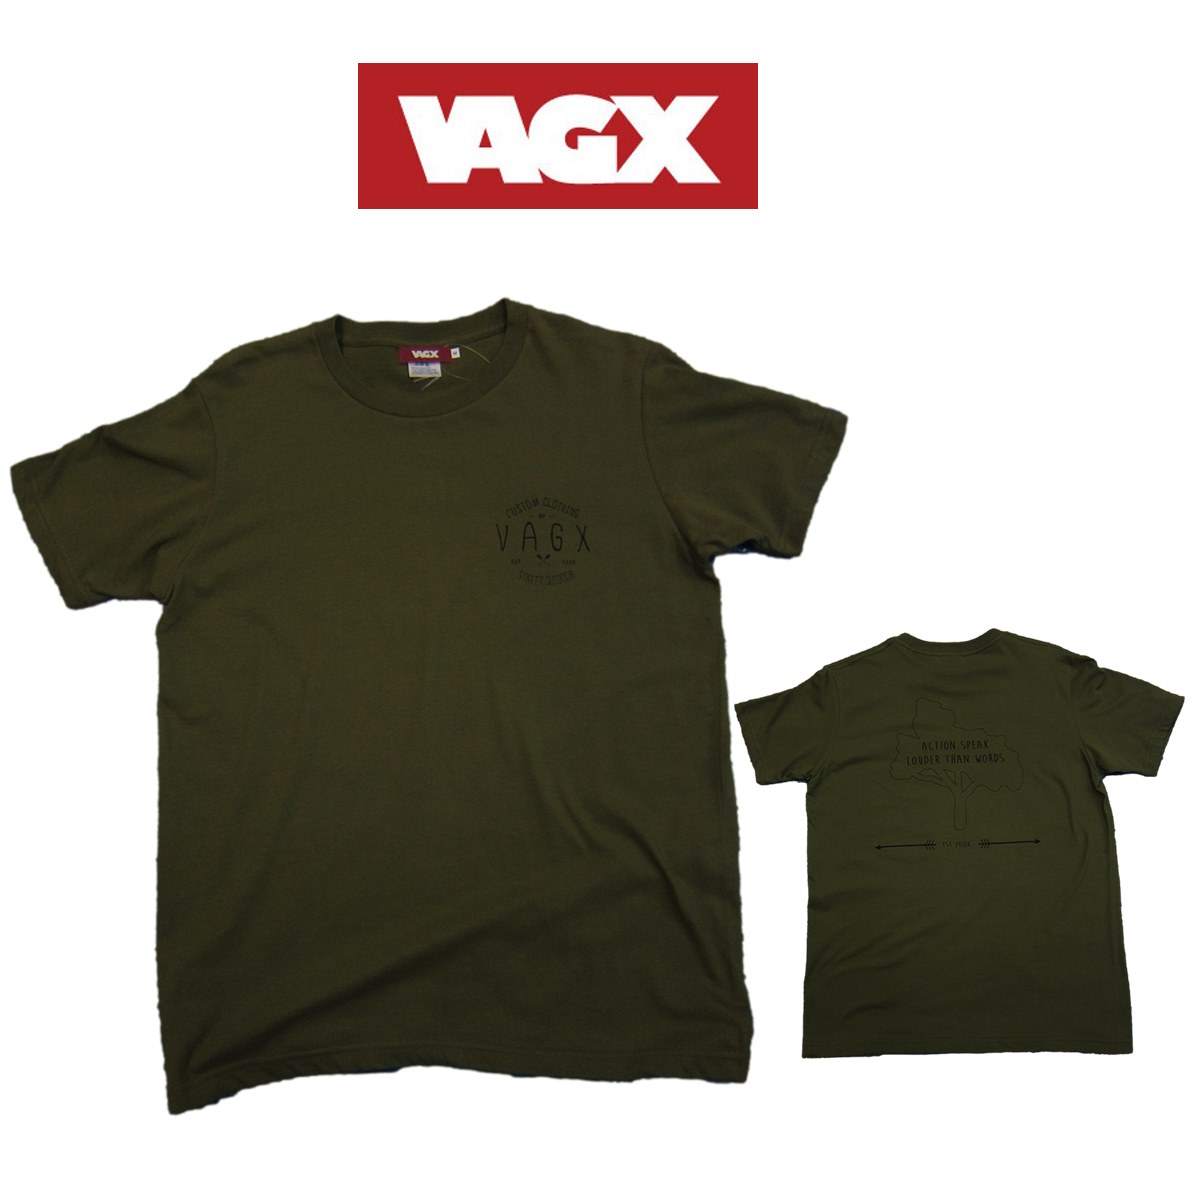 VAGX 半袖 Tree Tee シャツ Olive M寸ベグス ツリー Tシャツ オリーブグラトリ 山本純士 使用国内正規品 グラウンドトリック